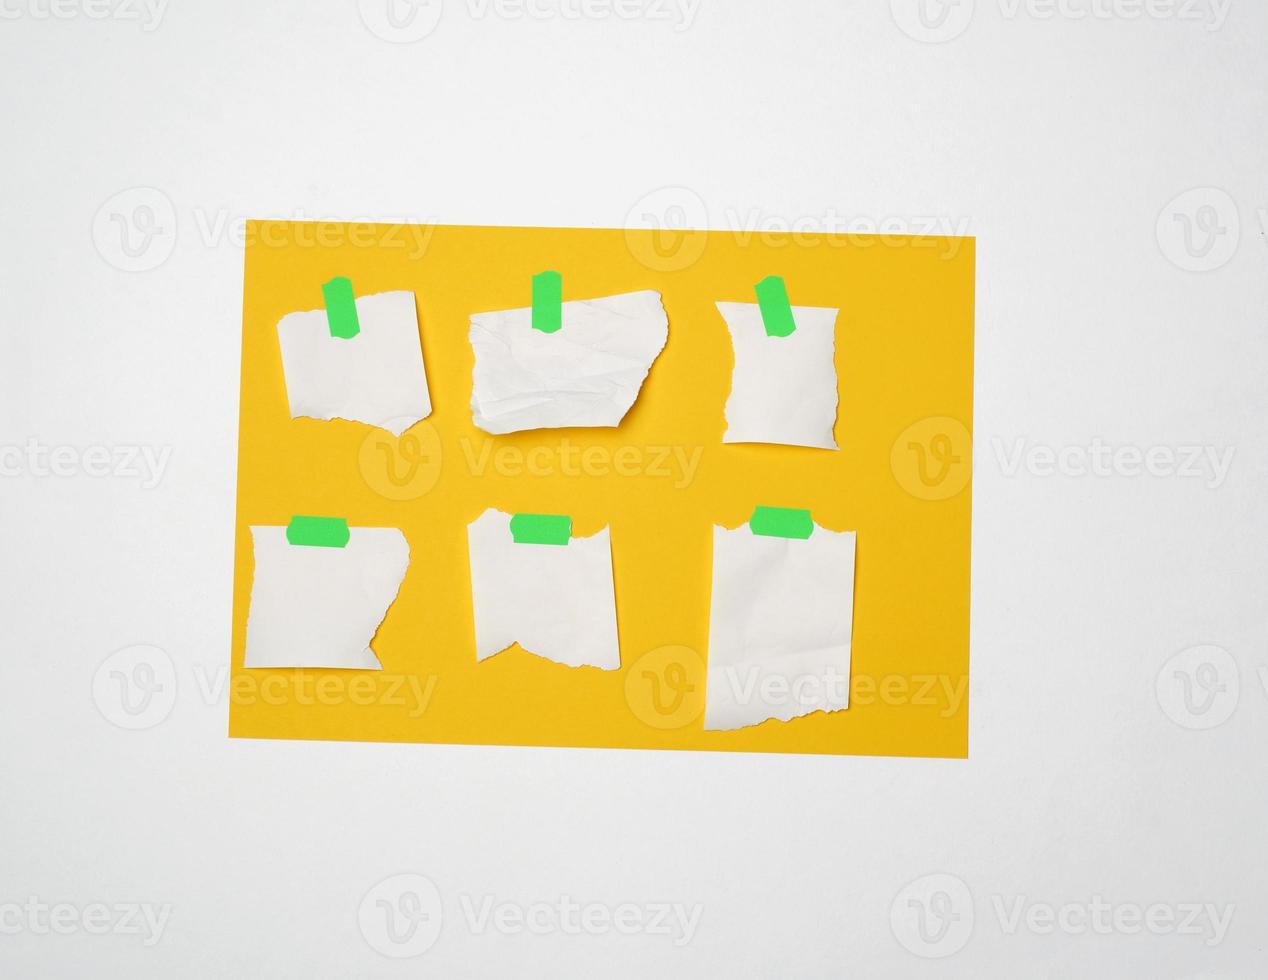 ensemble de morceaux de papier blanc vides de formes variées collés avec du velcro vert photo